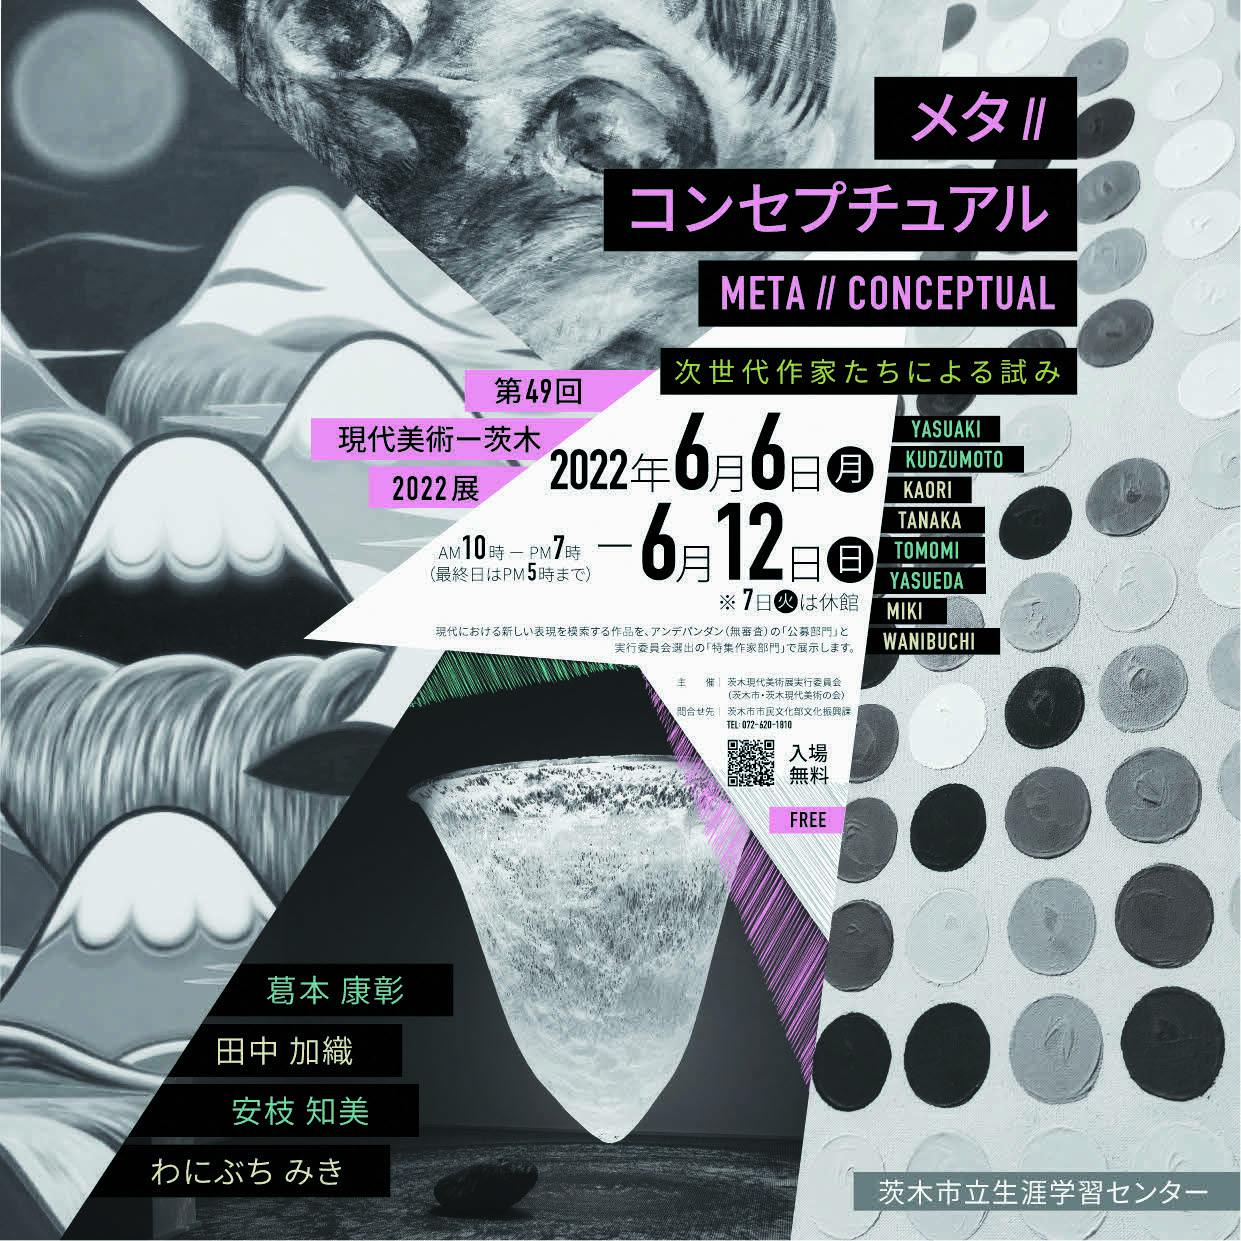 第49回現代美術－茨木2022展「メタコンセプチュアル」、茨木市立生涯学習センターにて。招待作家は、葛󠄀本康彰、田中加織、安枝知美、わにぶちみき。